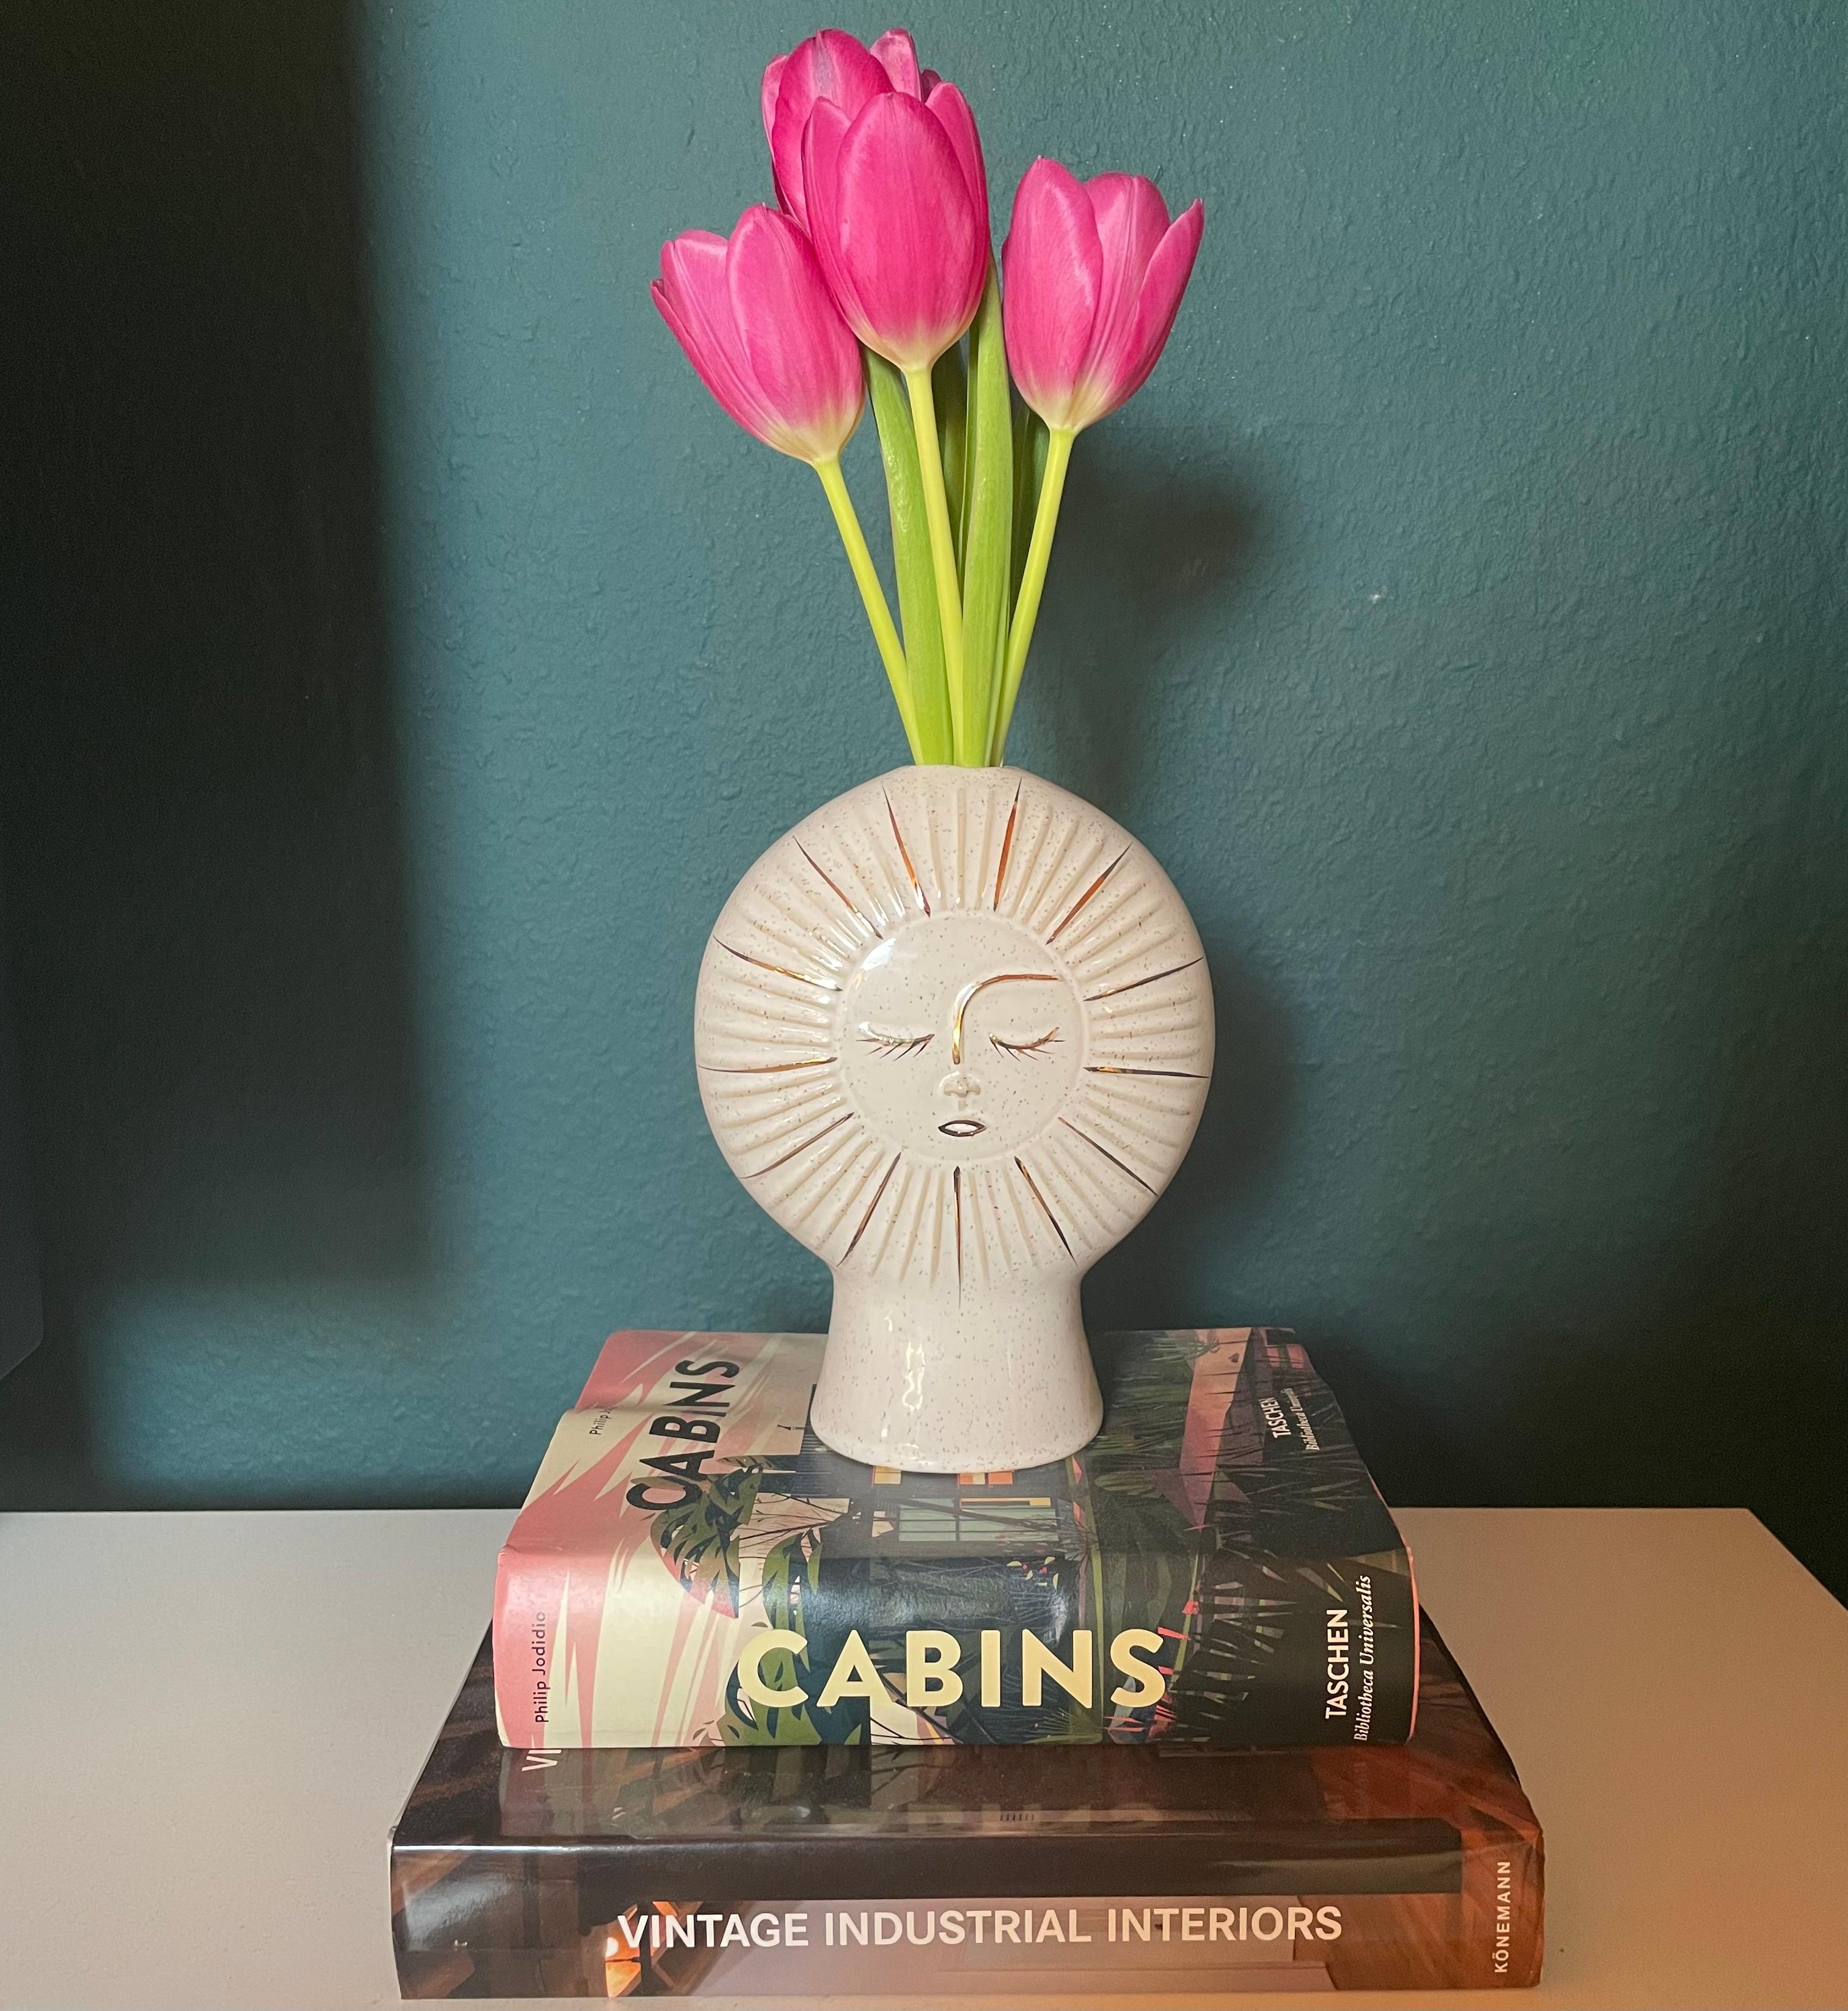 Lieben wir diese Vase ? YESSS!!! #frühling #frühlingsgefühle #blumen #vase #liebenwir #sonne 